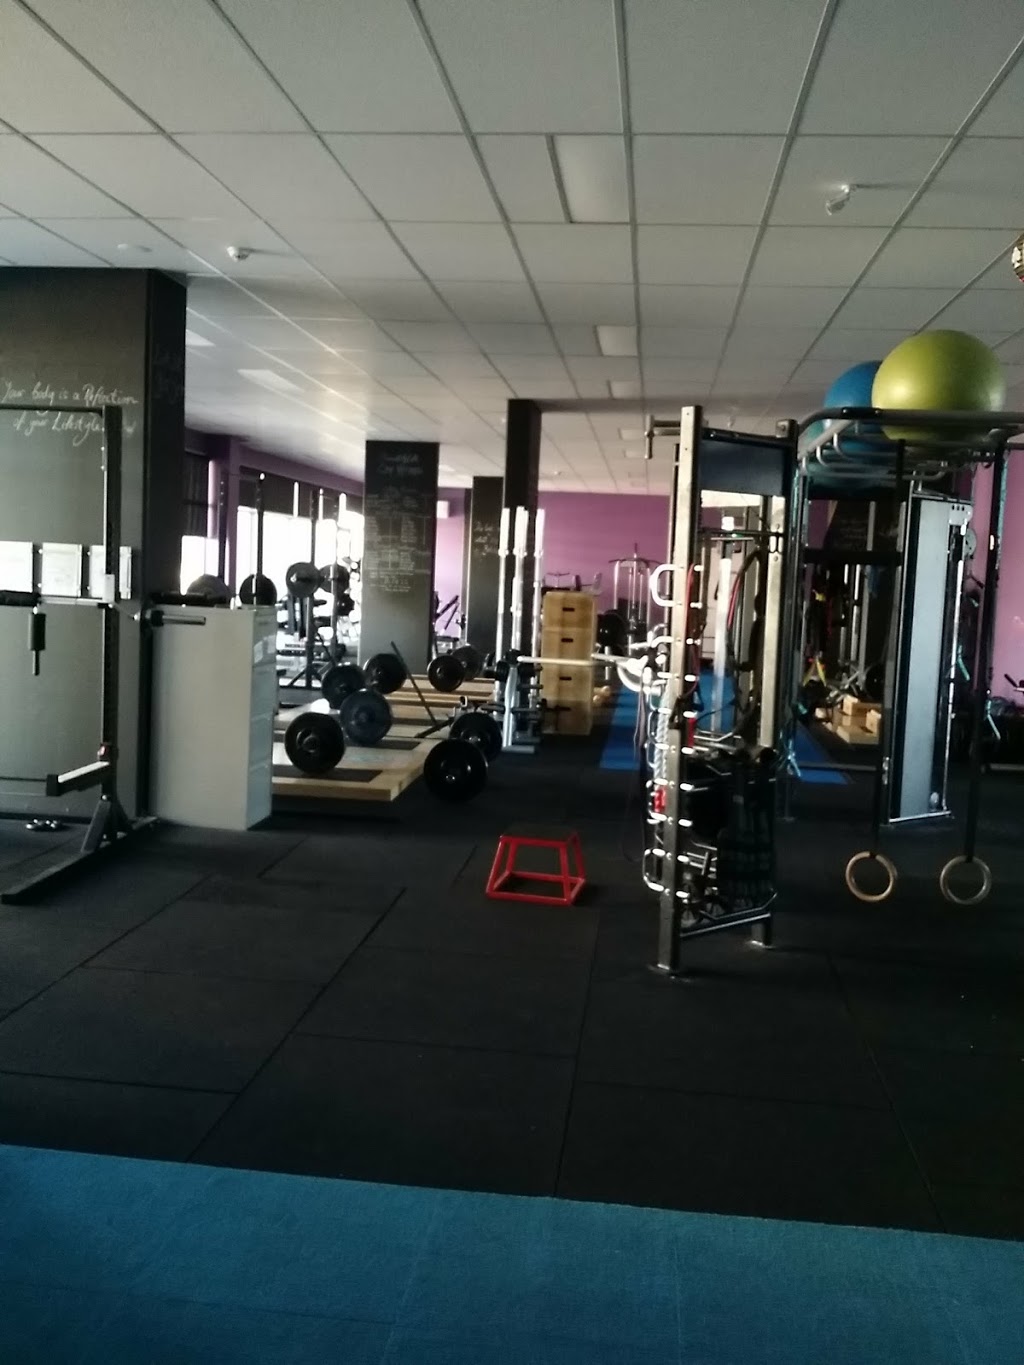 Elements4Life Team Training Centre | gym | Unit 79 -81 / 170 Flemington Road, Harrison ACT 2914, Australia